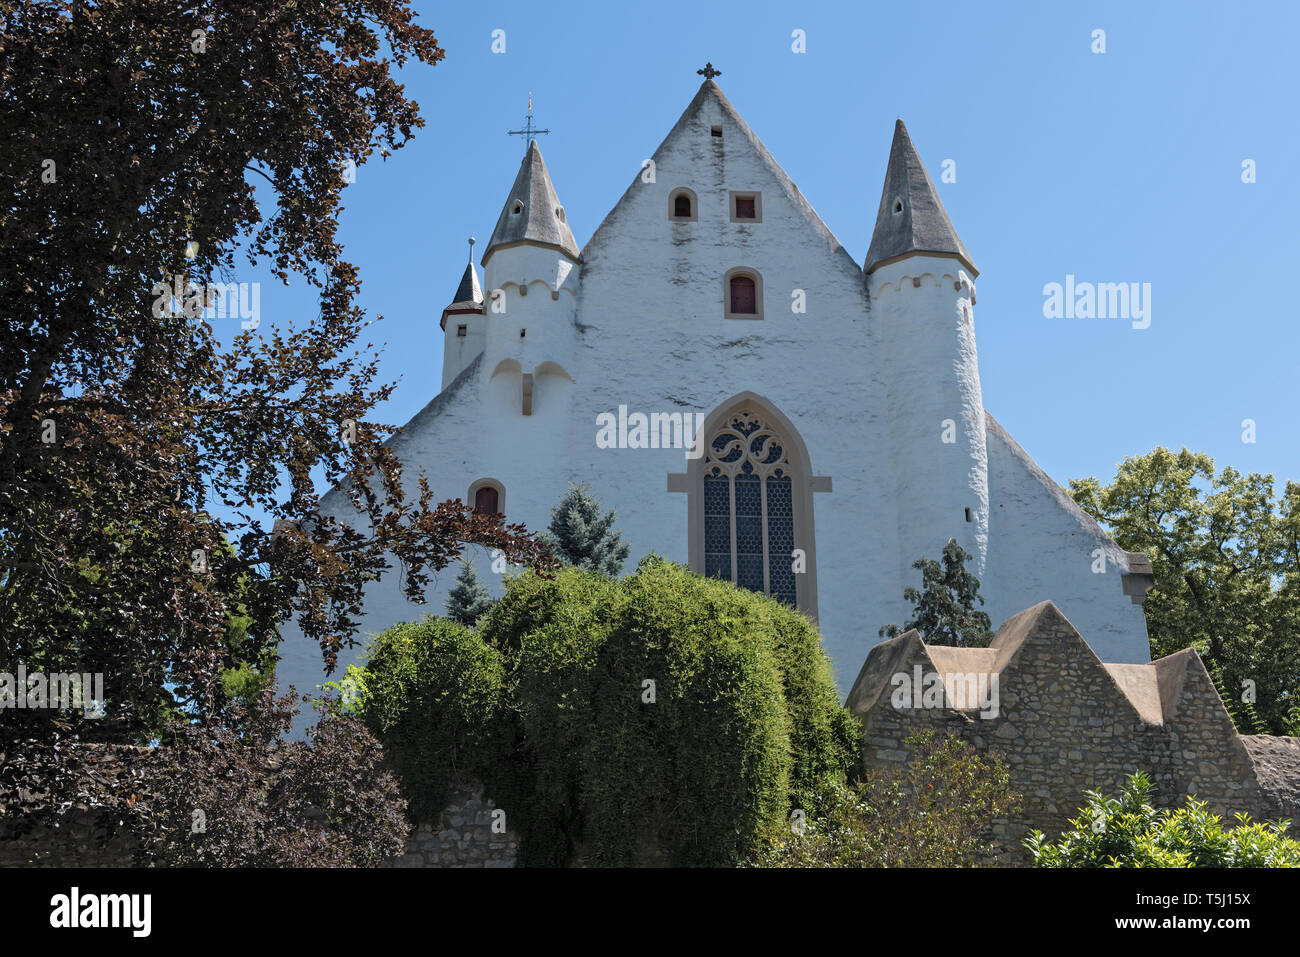 Iglesia del castillo con la muralla medieval de la ciudad en la ciudad de ober ingelheim rheinhessen Renania Palatinado alemania Foto de stock